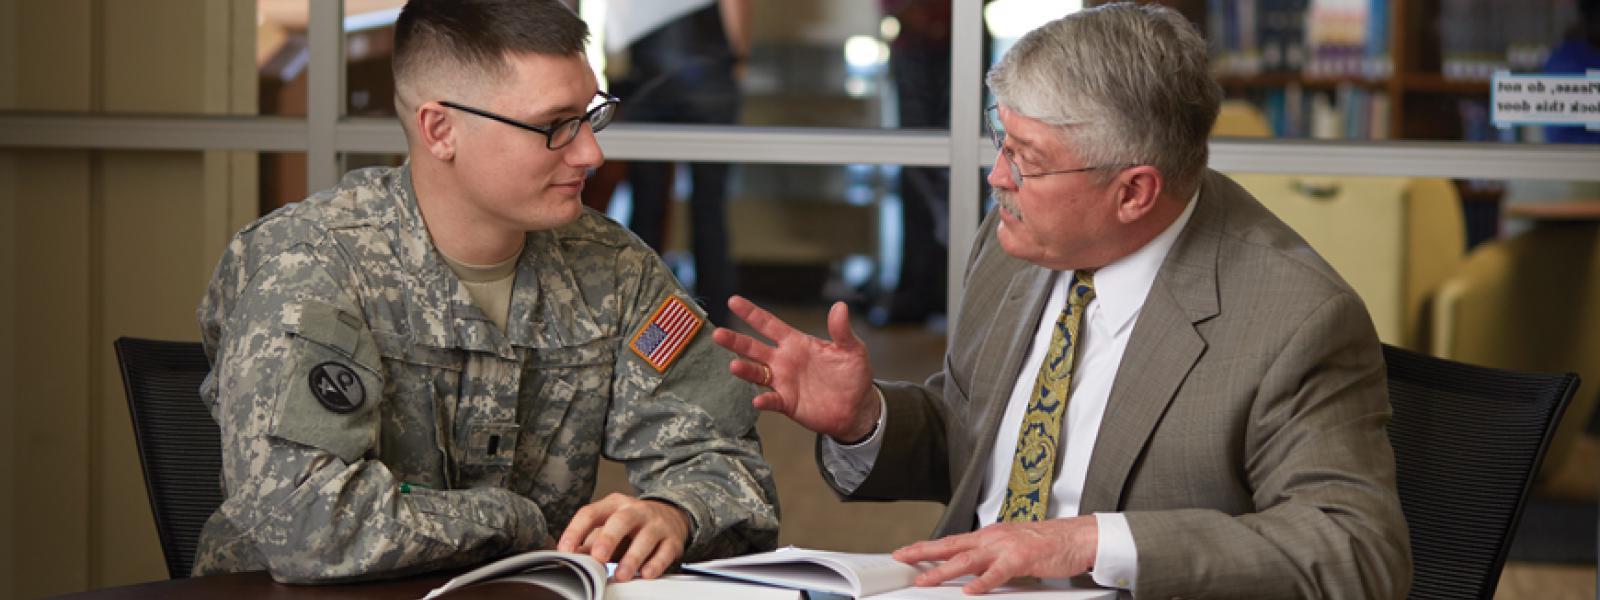 一位神学院教授在办公室环境中与一名军队牧师学生谈话.